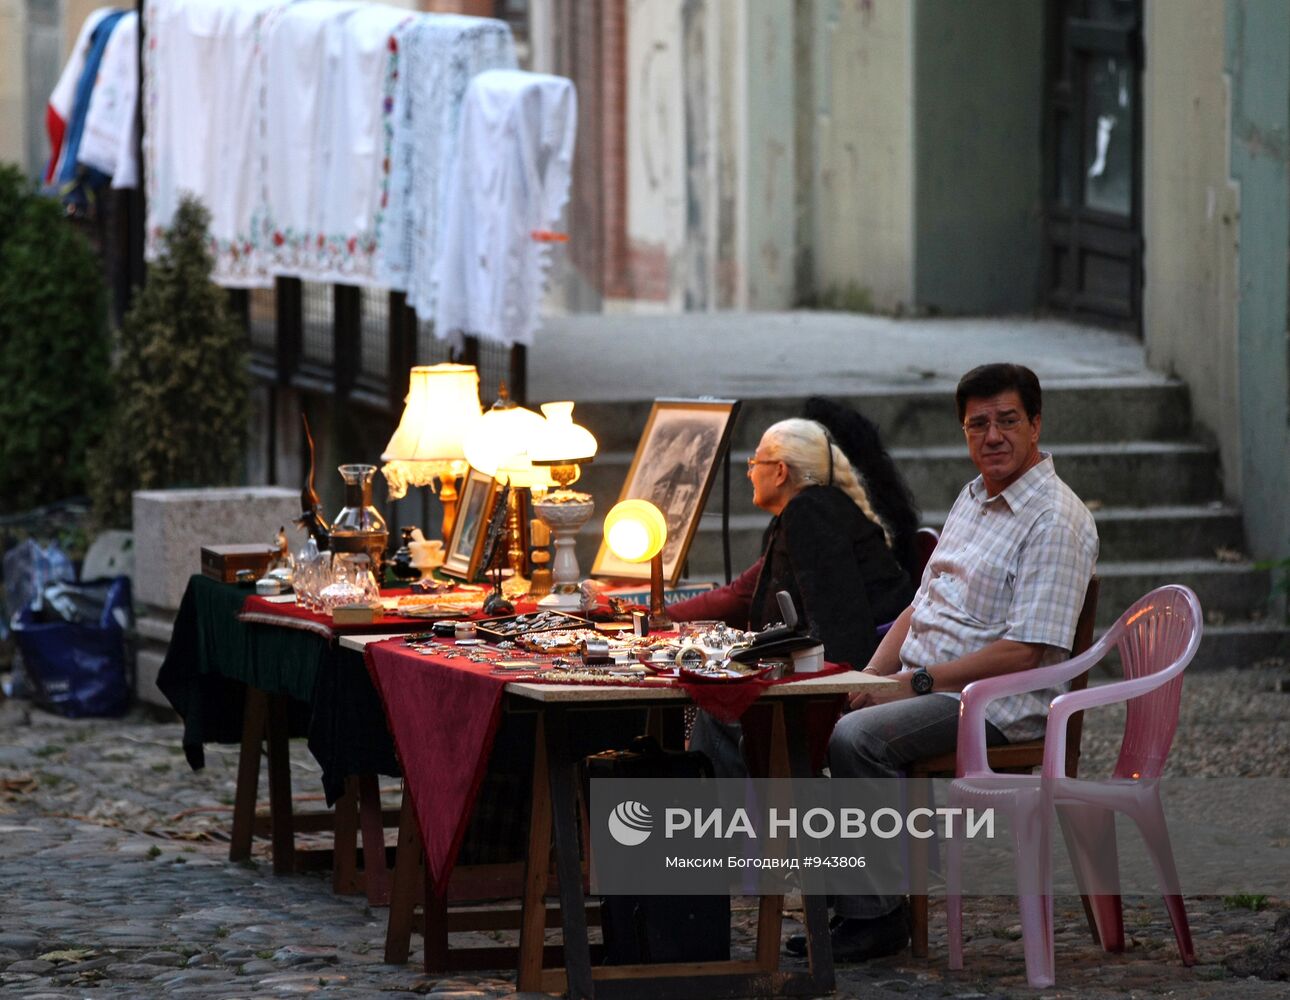 Торговля сувенирами на одной из улиц Белграда